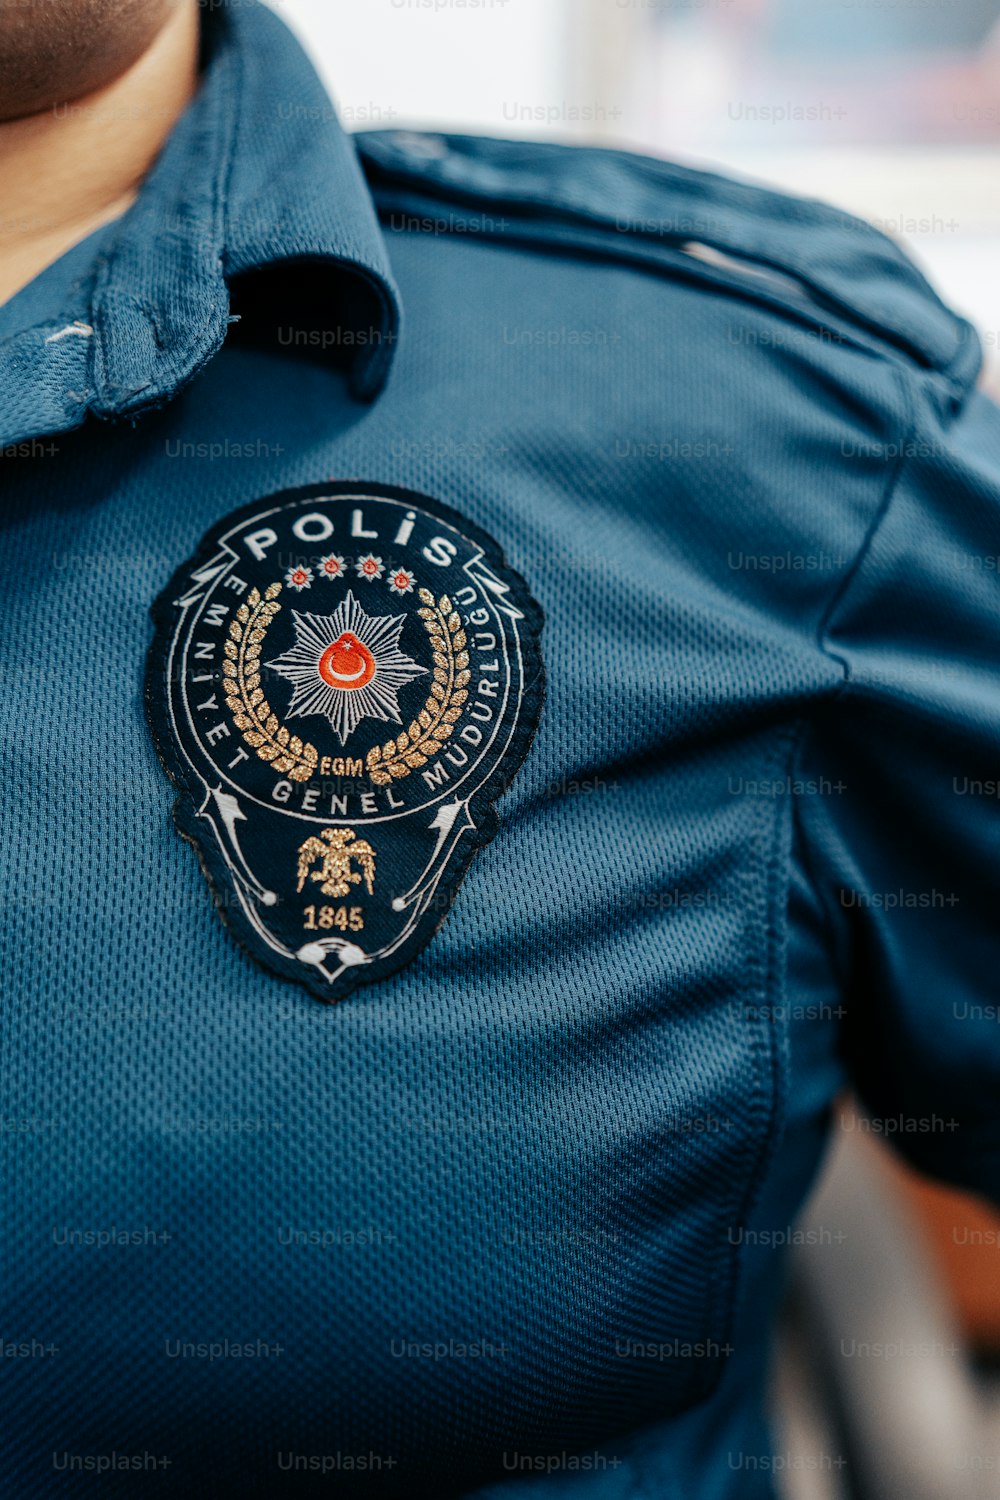 Um policial está usando um uniforme azul